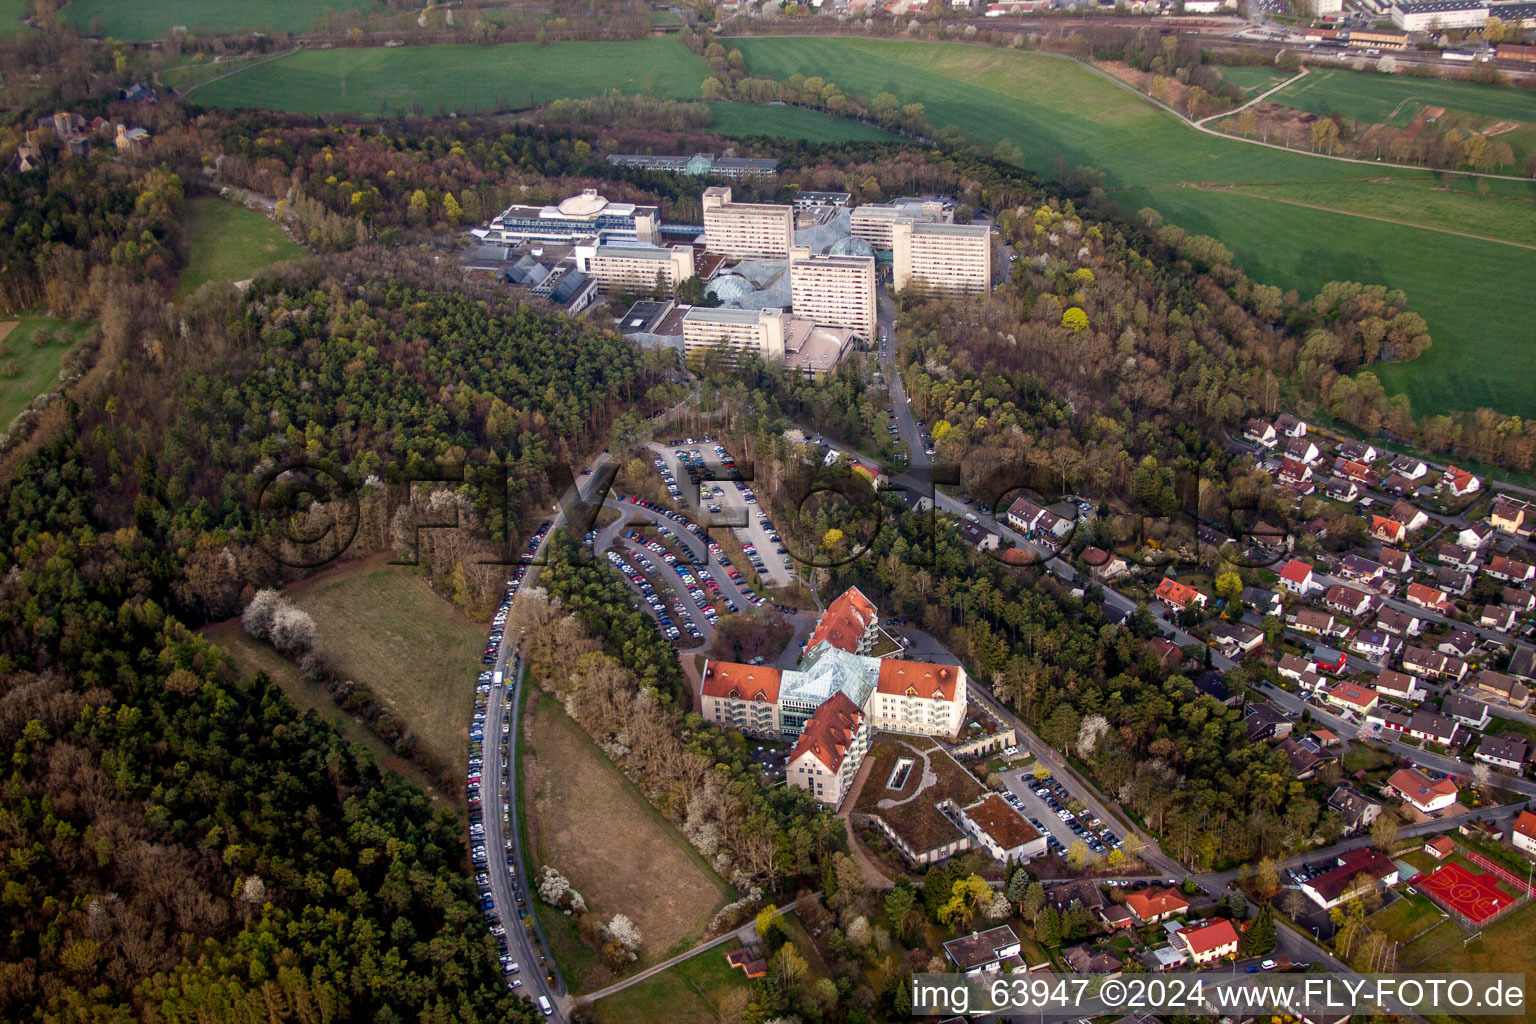 Luftbild von Klinikgelände des Krankenhauses Neurologische Klinik Bad Neustadt an der Saale in Bad Neustadt an der Saale im Bundesland Bayern, Deutschland